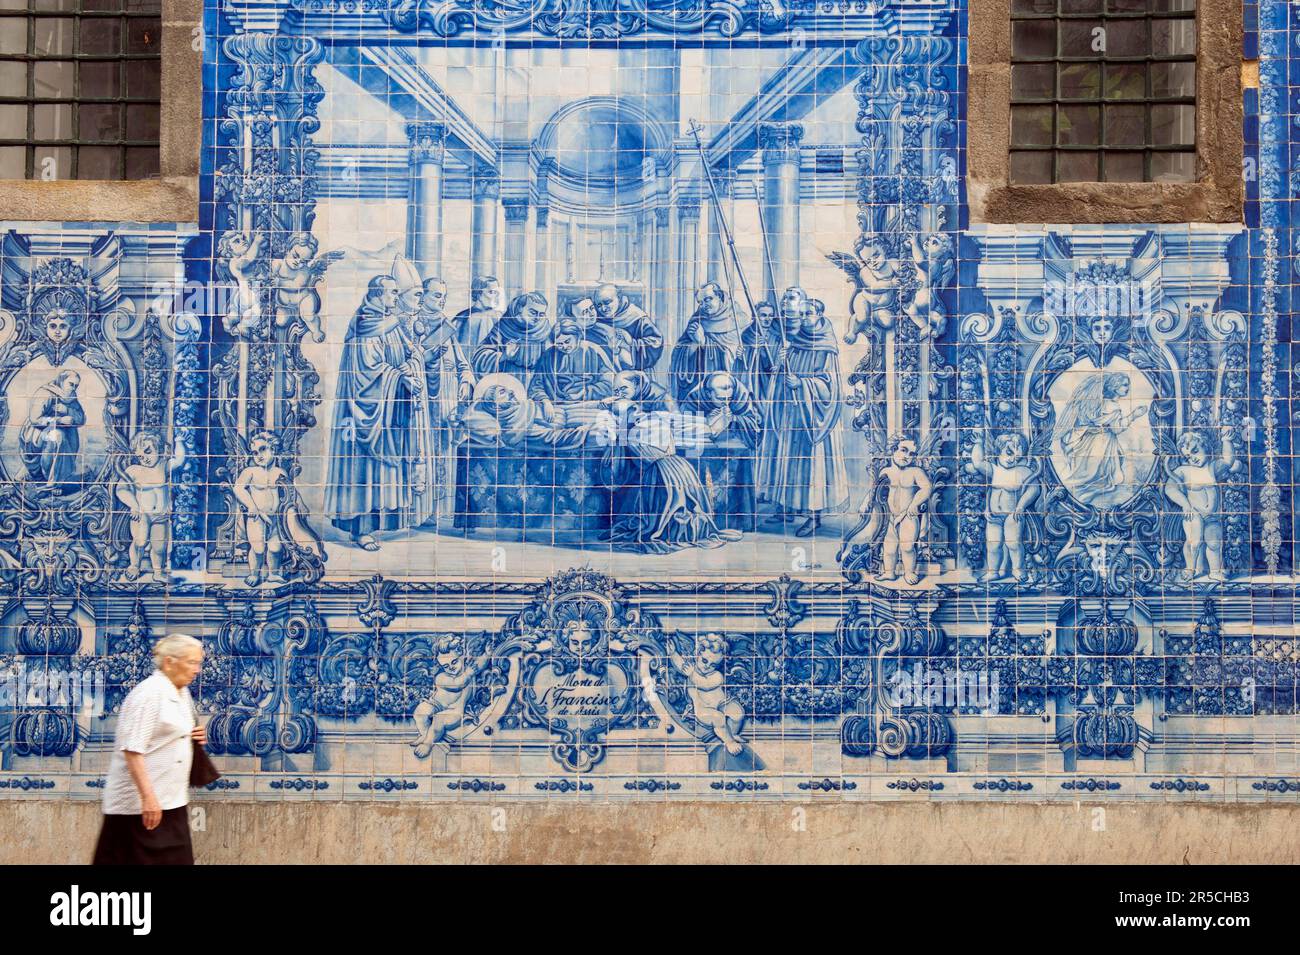 Painted tiles, Capela Das Almas, Porto, Portugal, azulejos, chapel, ceramic art Stock Photo